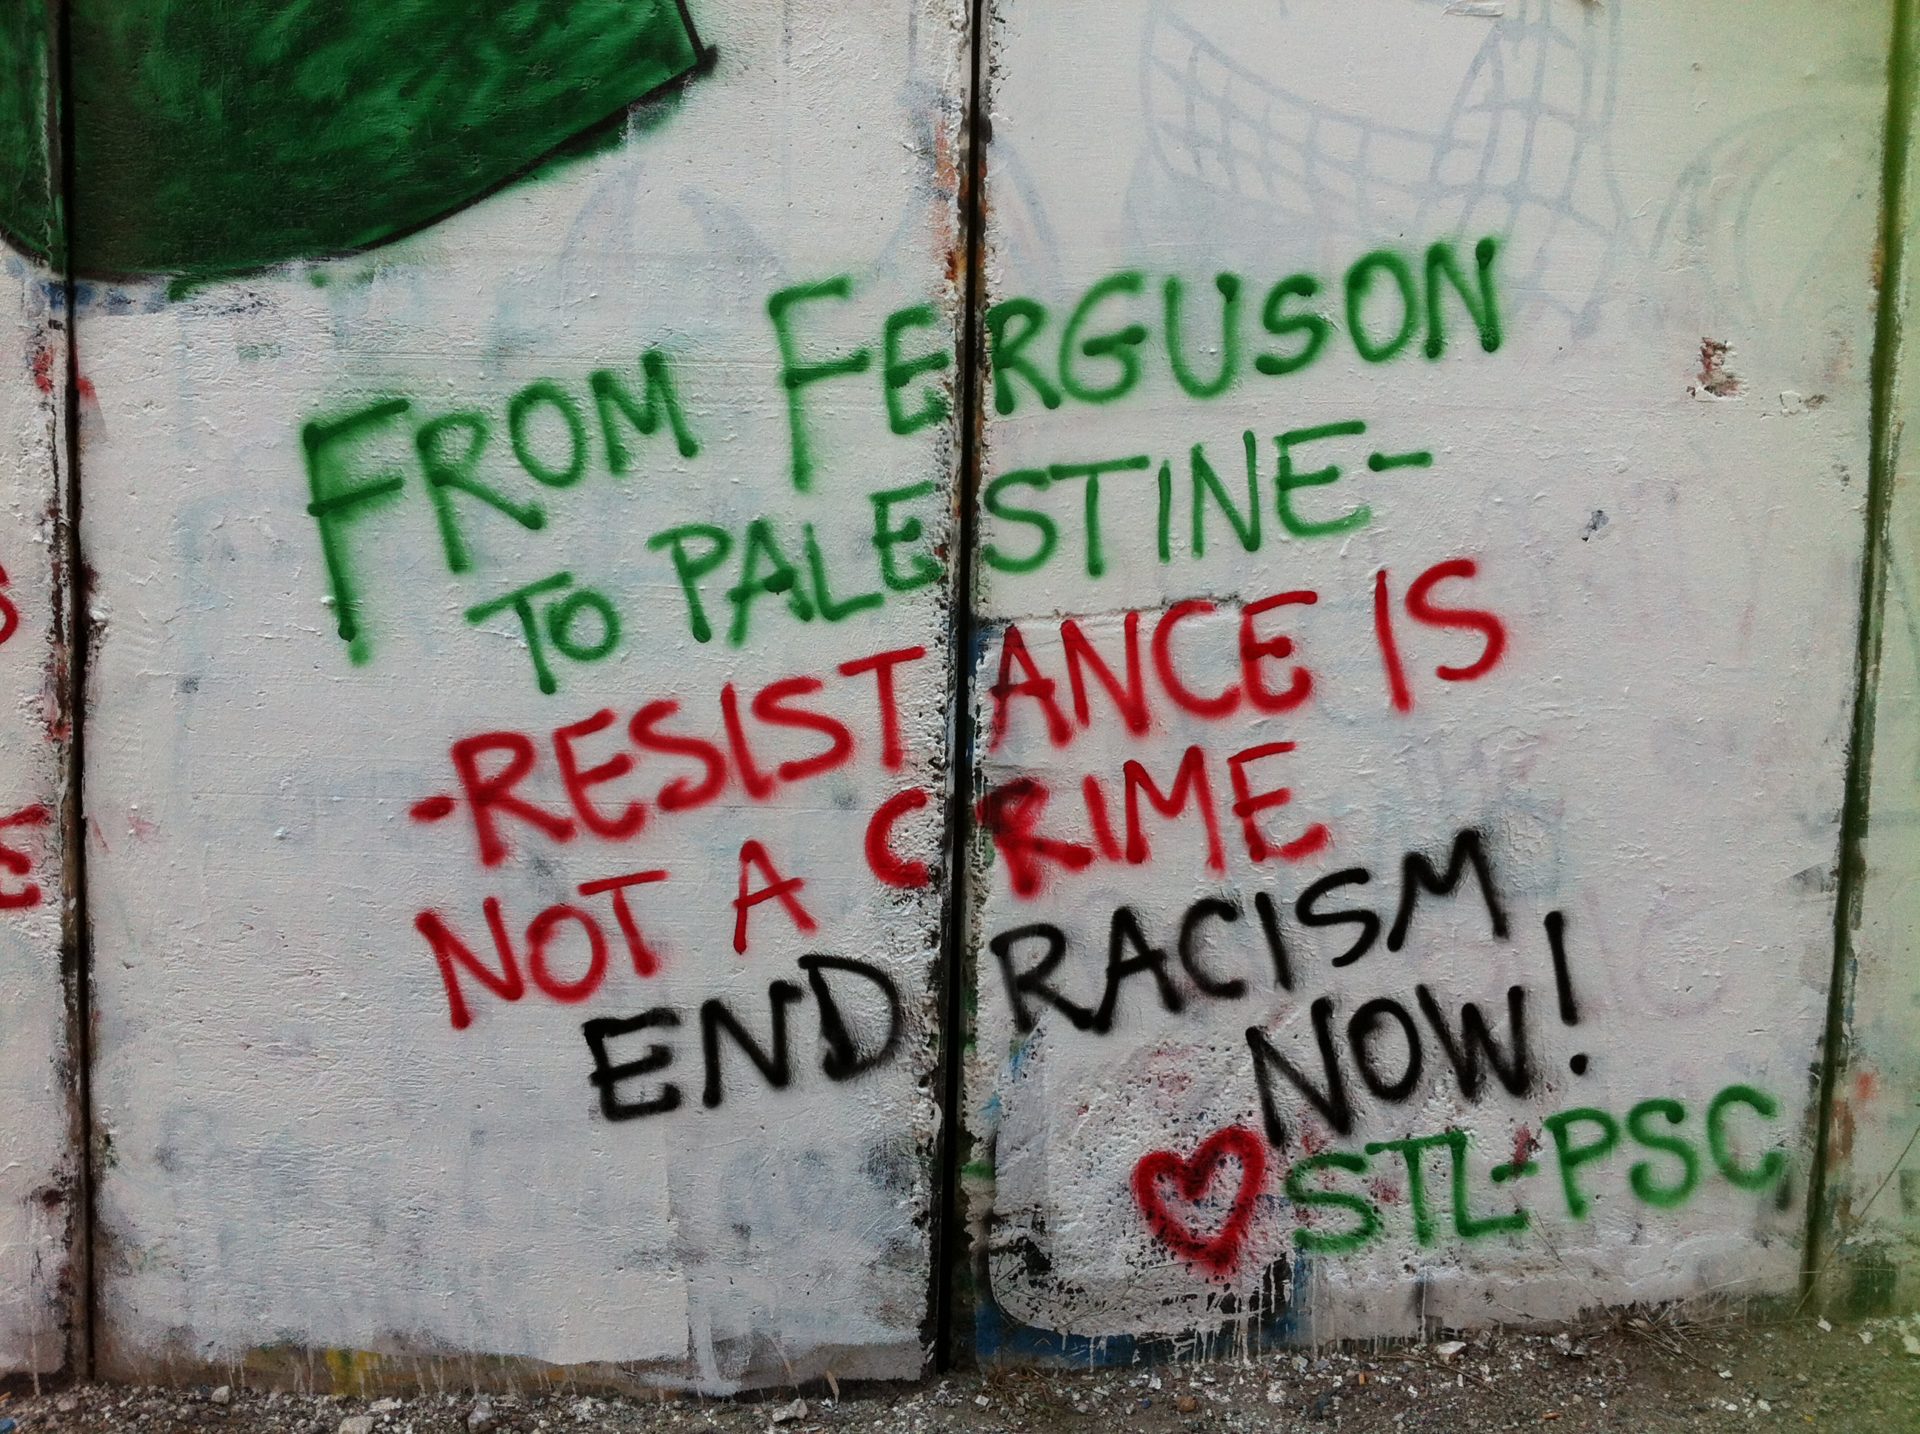 Ferguson2Palestine_wall_graffiti